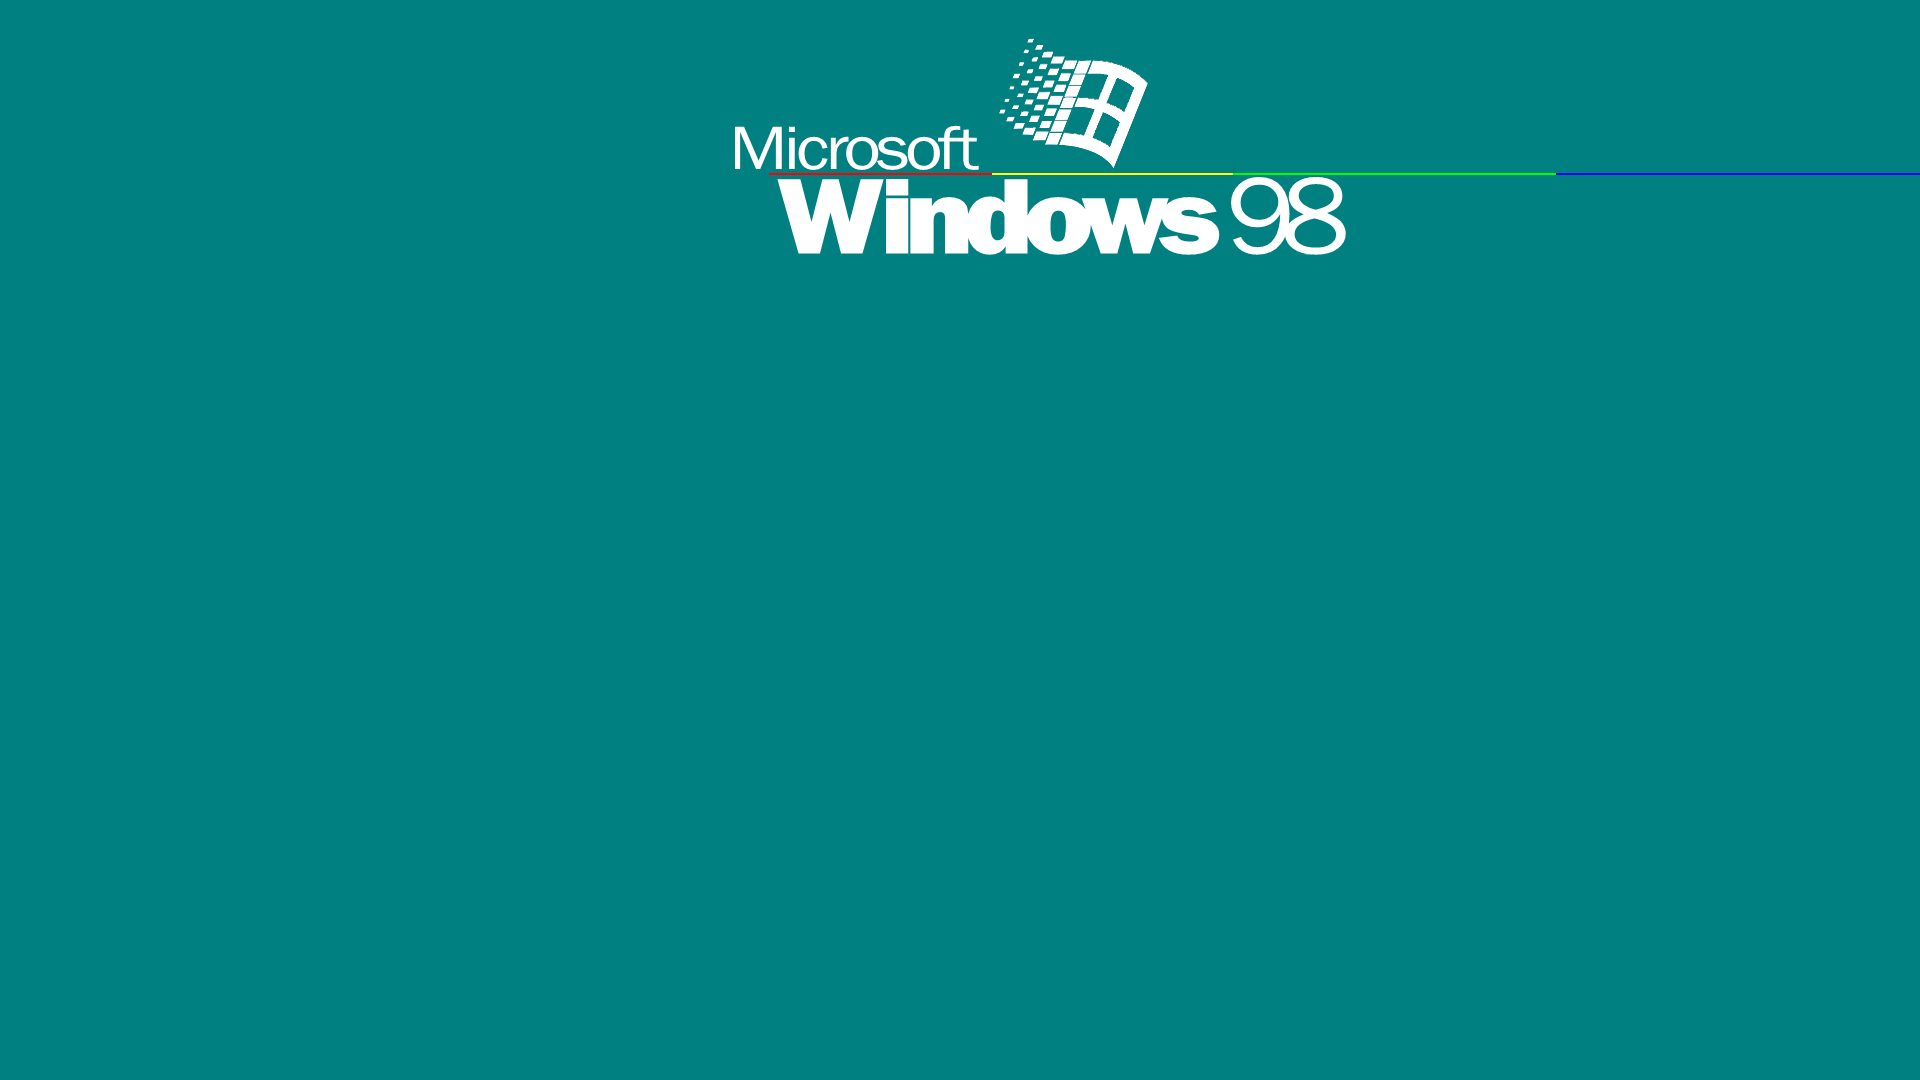 Bạn có biết rằng WallpaperDog cung cấp kho hình nền mặc định của Windows 98? Với những tấm ảnh đặc biệt đã được tối ưu hóa cho màn hình rộng, chắc chắn sẽ tạo nên cảm hứng cho bạn.